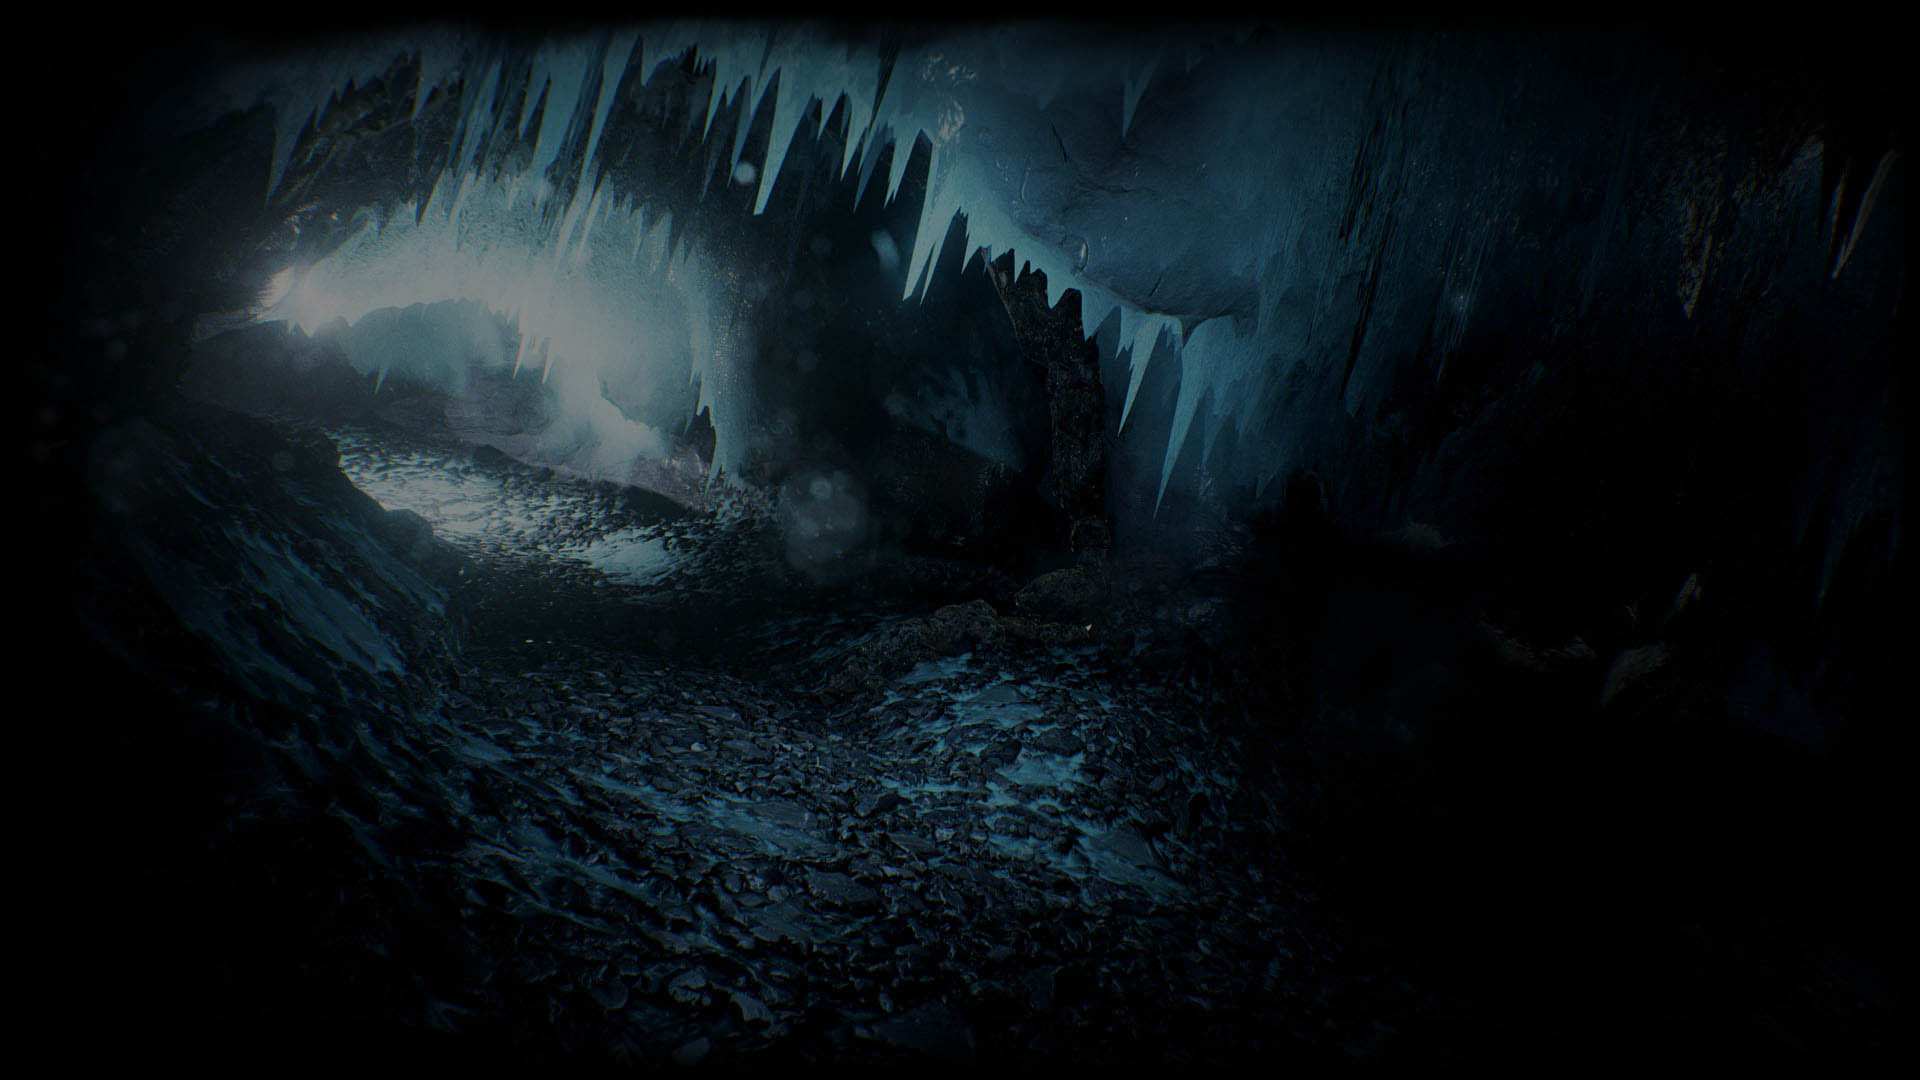 HD wallpaper, Desktop Full Hd Ice Cave Background Image, 1920X1080 Full Hd Desktop, Steam Market, Ice Cave, Crystal Caves, Cave Exploration